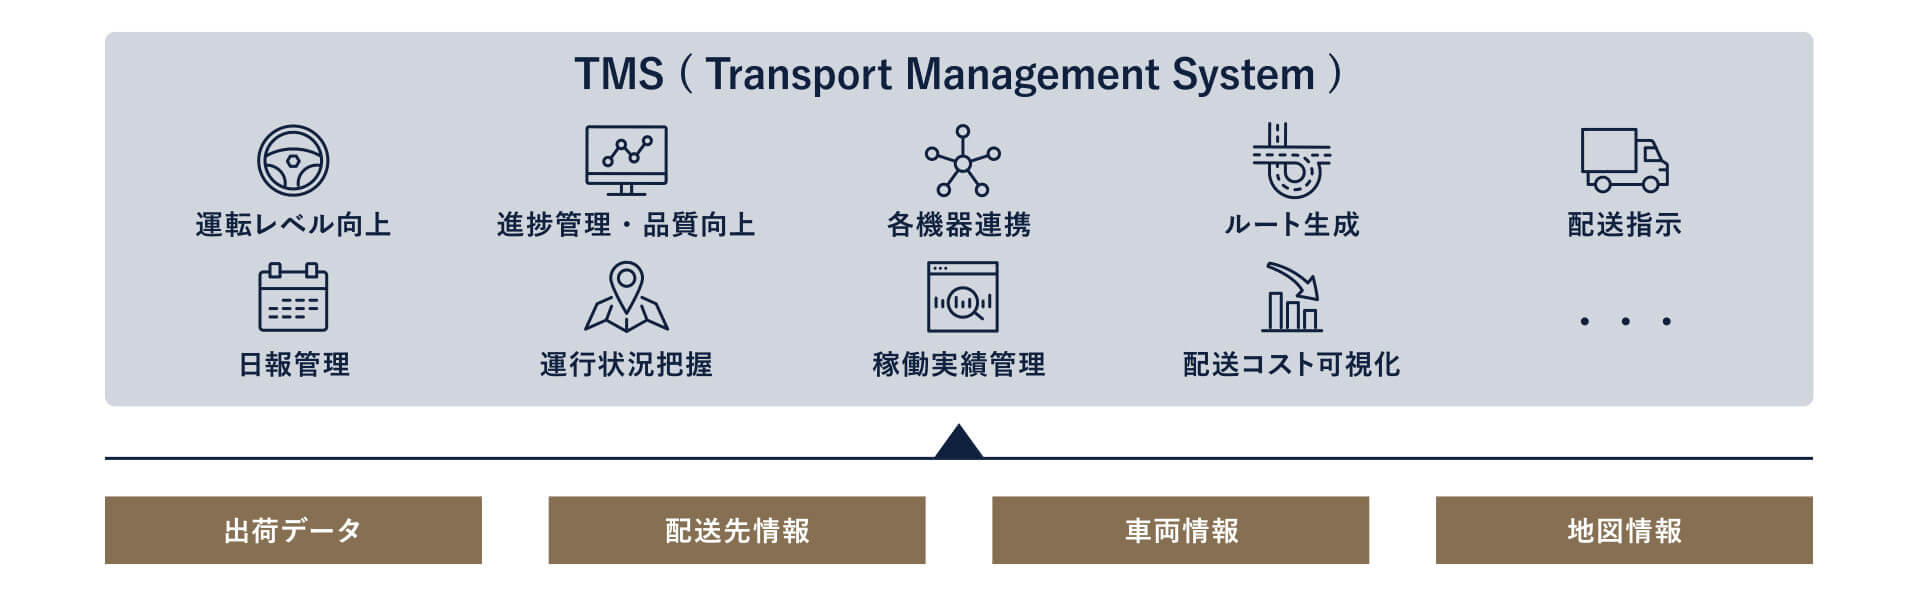 図2．TMS(Transport Management System)  